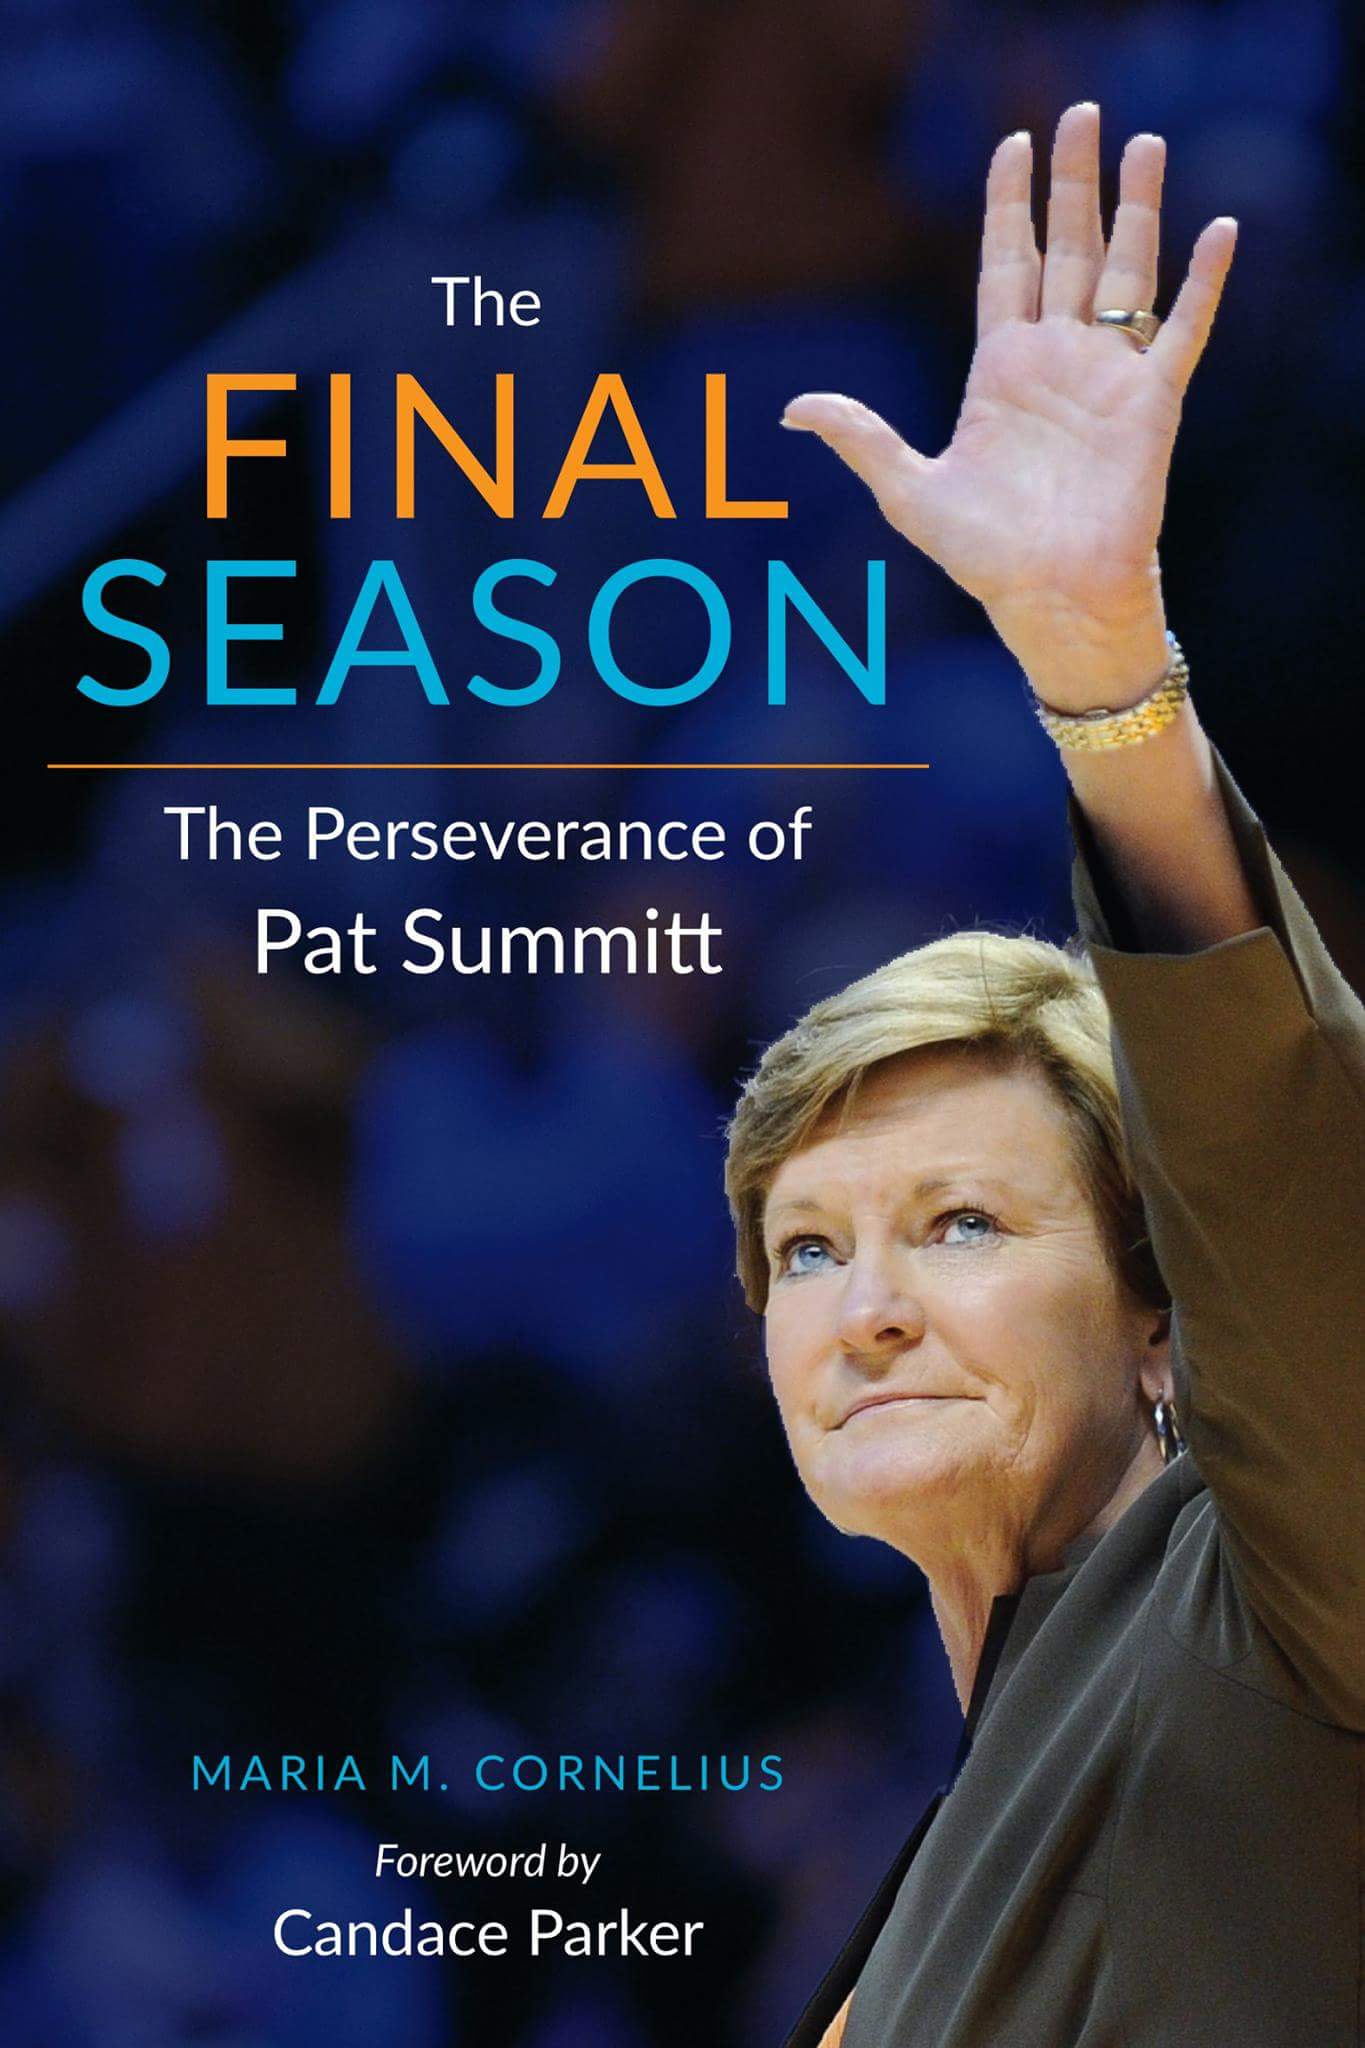 New Pat Summitt Book, "The Final Season"